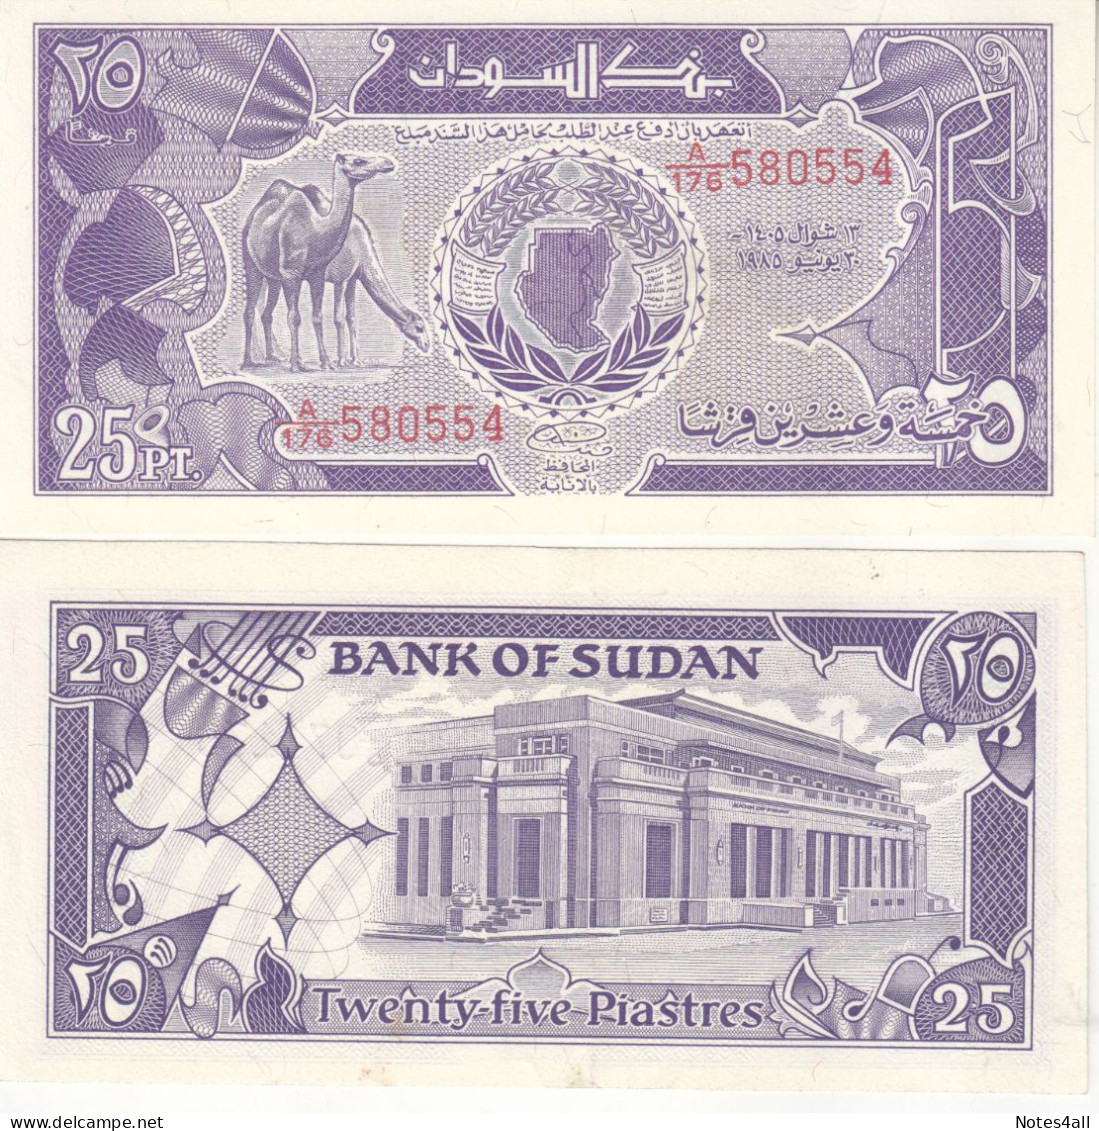 SUDAN 25 PT PIASTRES 1985 P-30 Au/UNC - Soudan